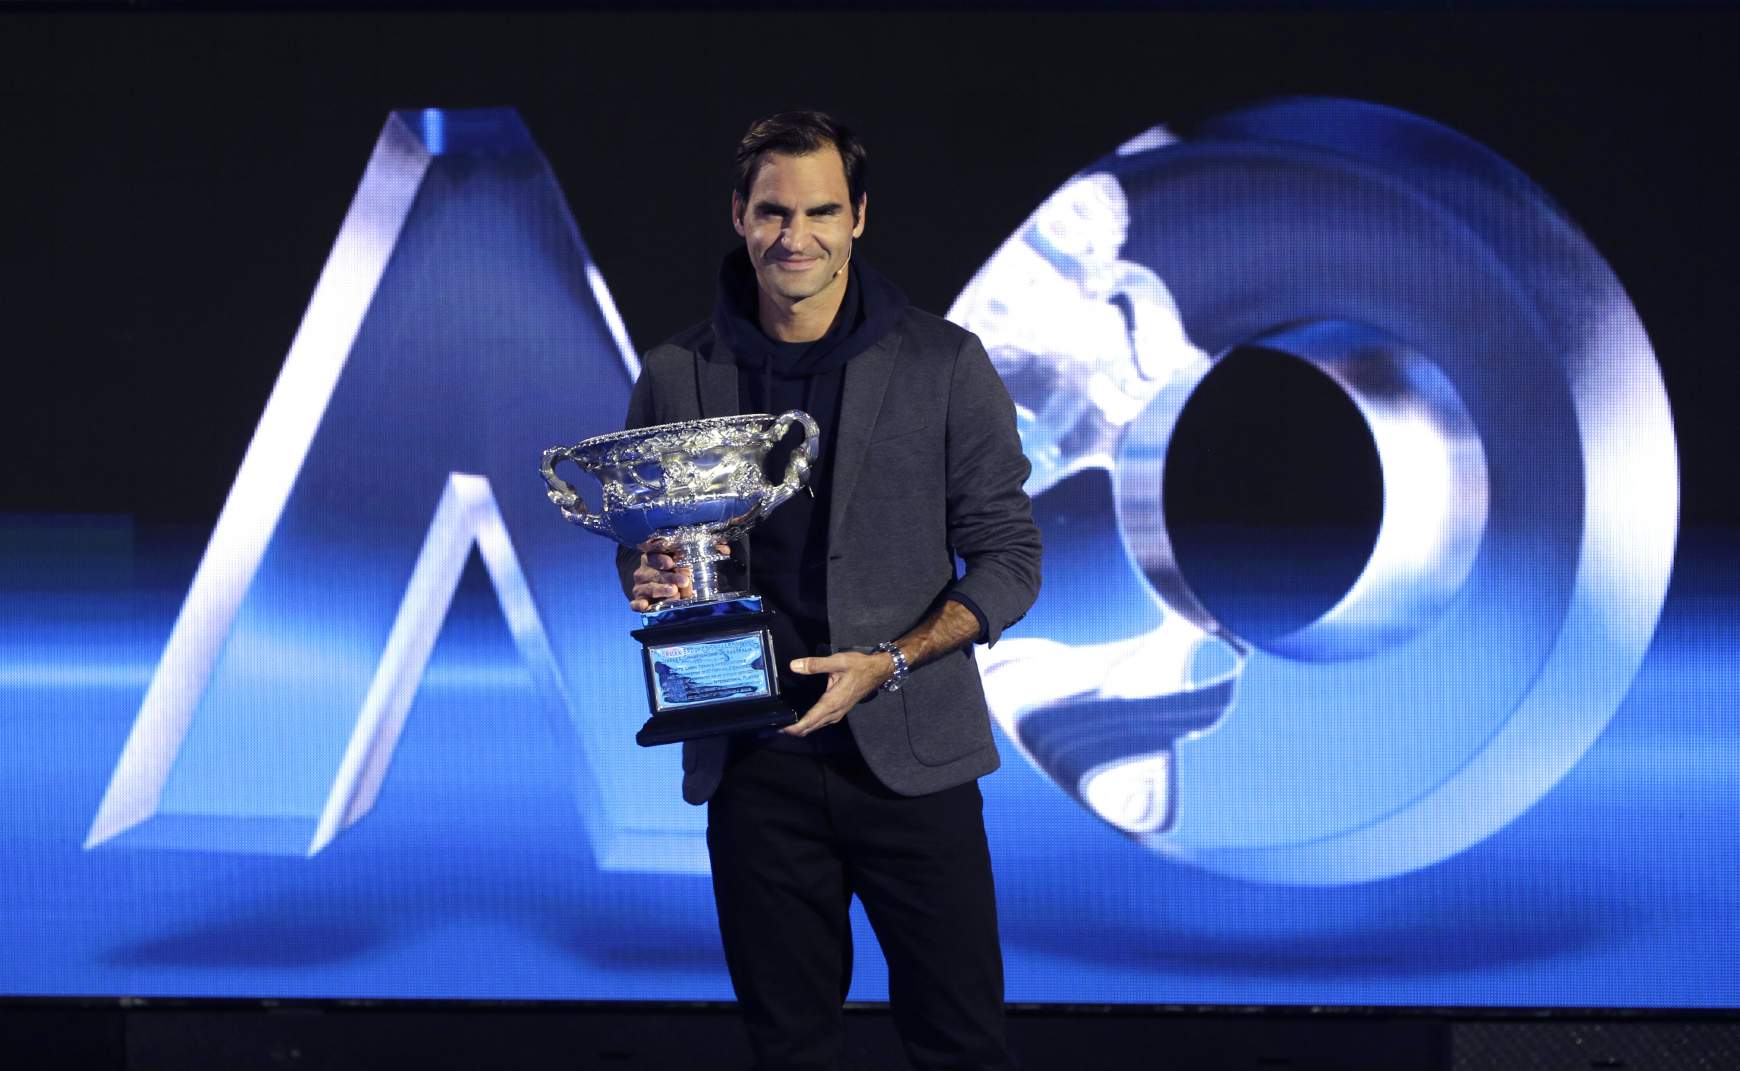 Roger Federer - Australin Open